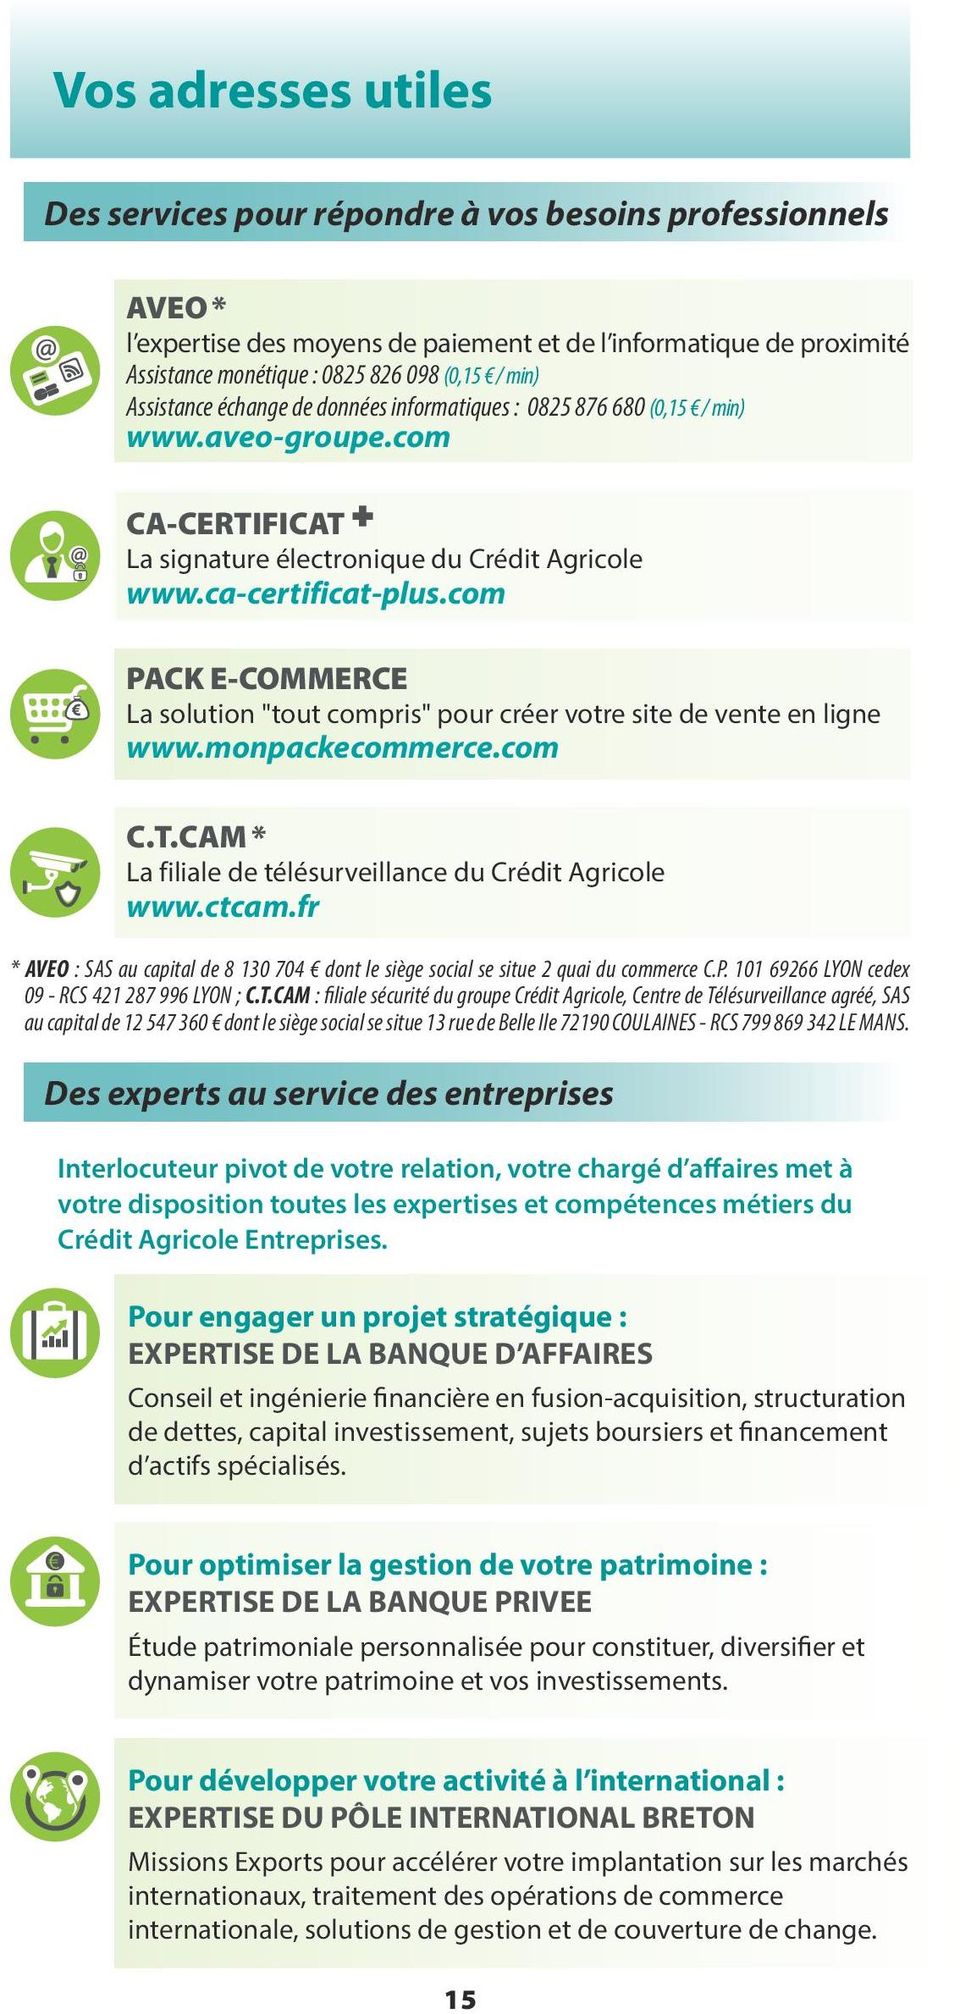 com PACK E-COMMERCE La solution "tout compris" pour créer votre site de vente en ligne www.monpackecommerce.com C.T.CAM * La filiale de télésurveillance du Crédit Agricole www.ctcam.